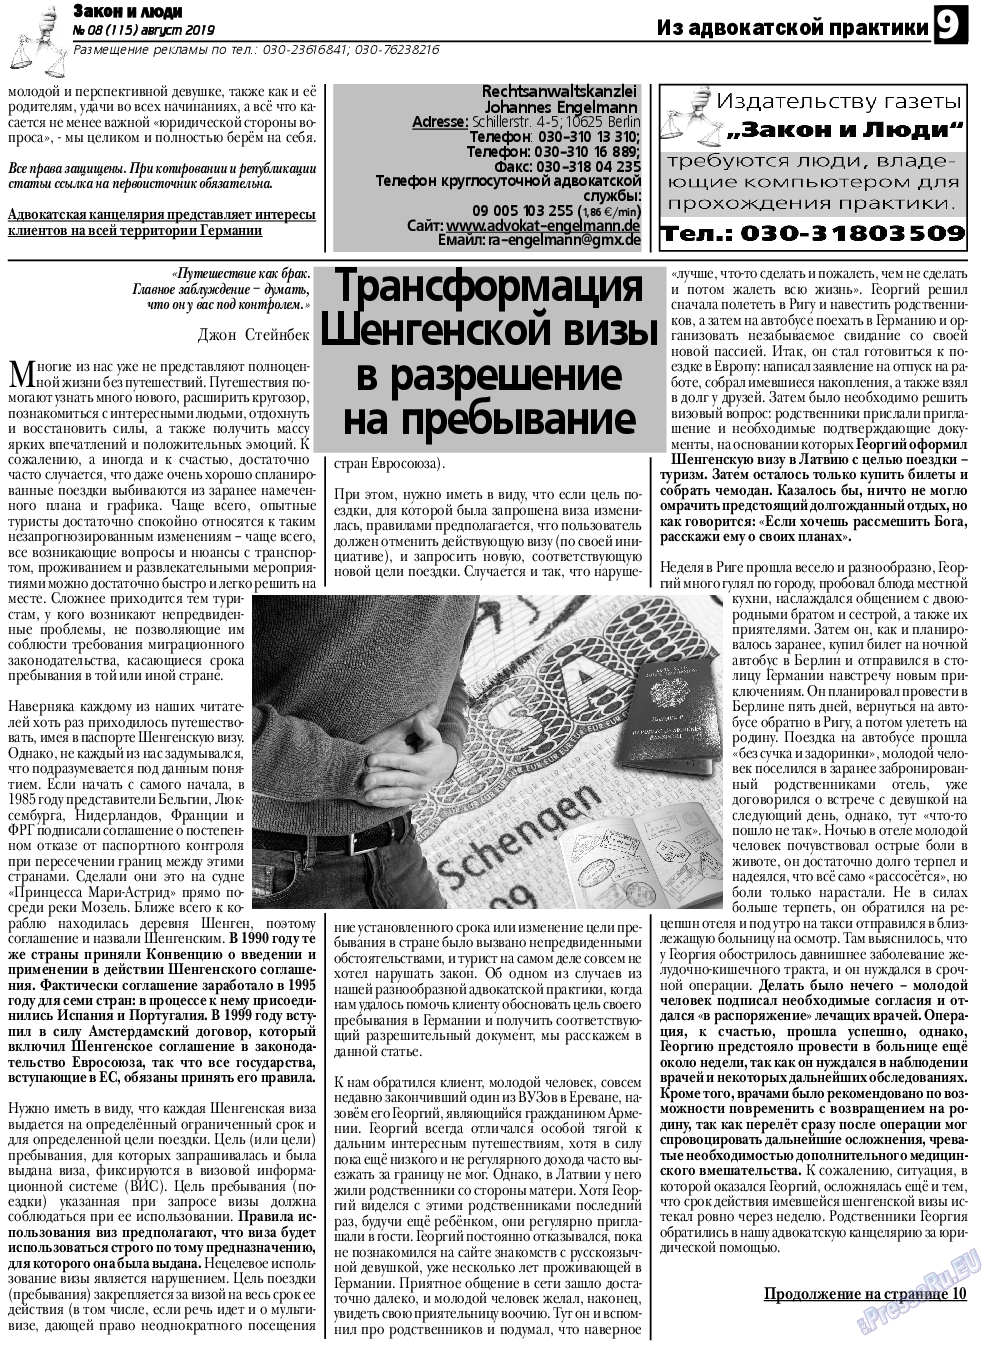 Закон и люди, газета. 2019 №8 стр.9